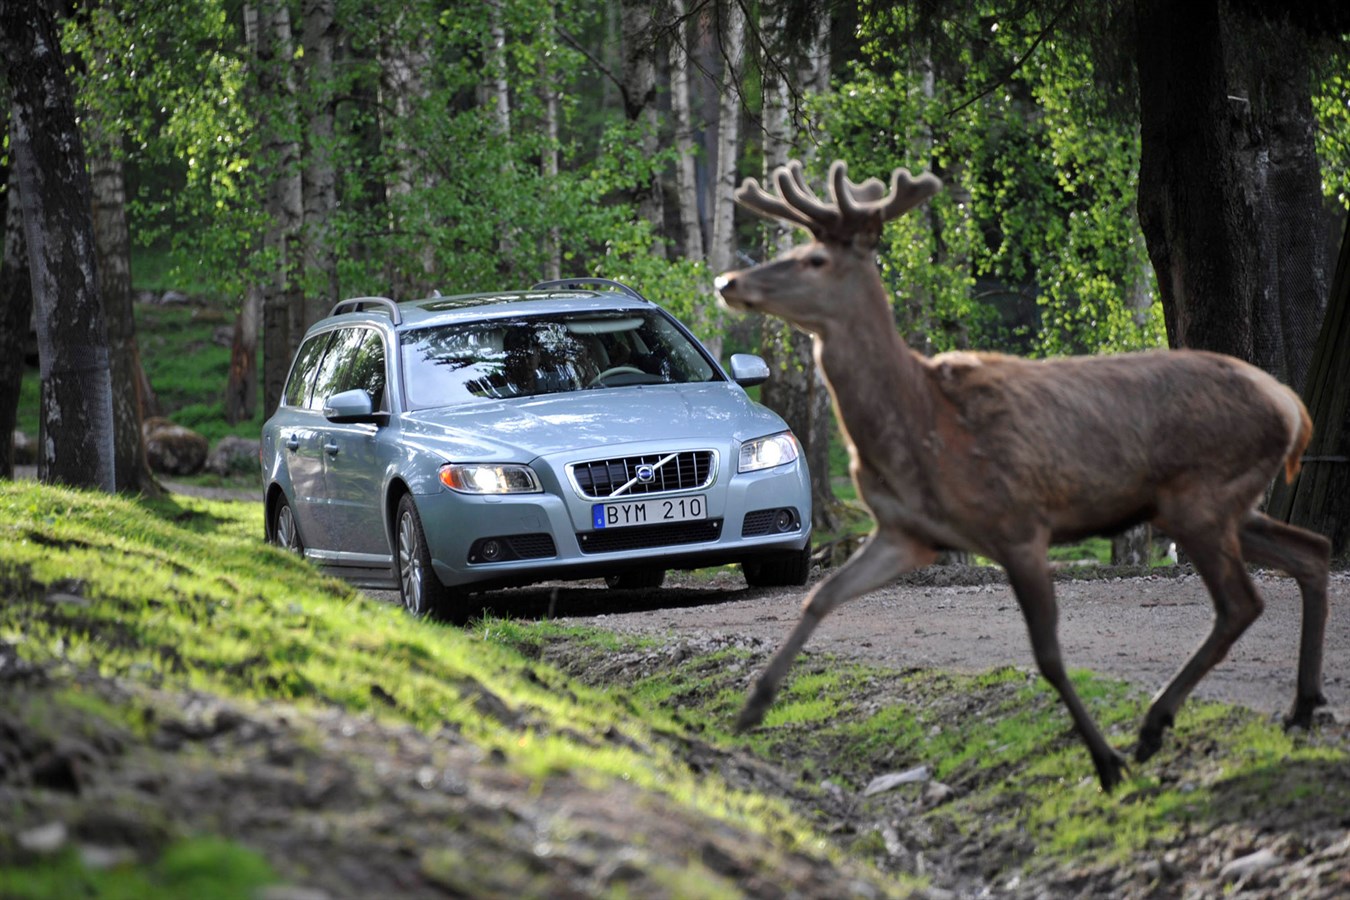 Volvo Cars, vahşi hayvanlarla çarpışmayı önleyici teknolojiler geliştiriyor